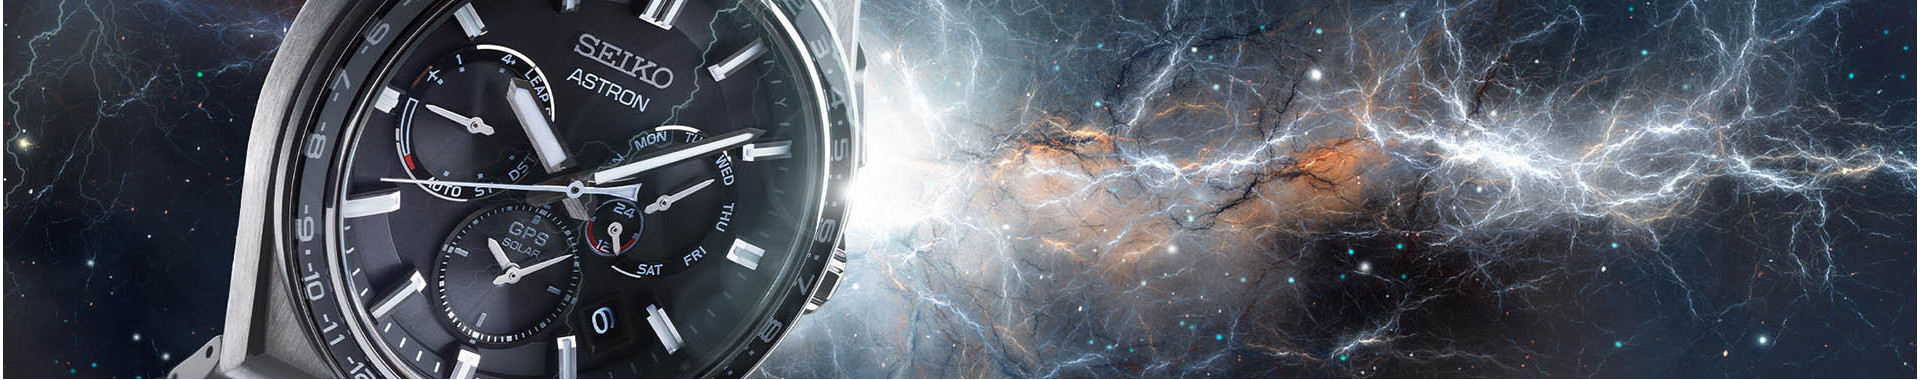 Buy Seiko Astron Men's Watches Online | Seiko Boutique